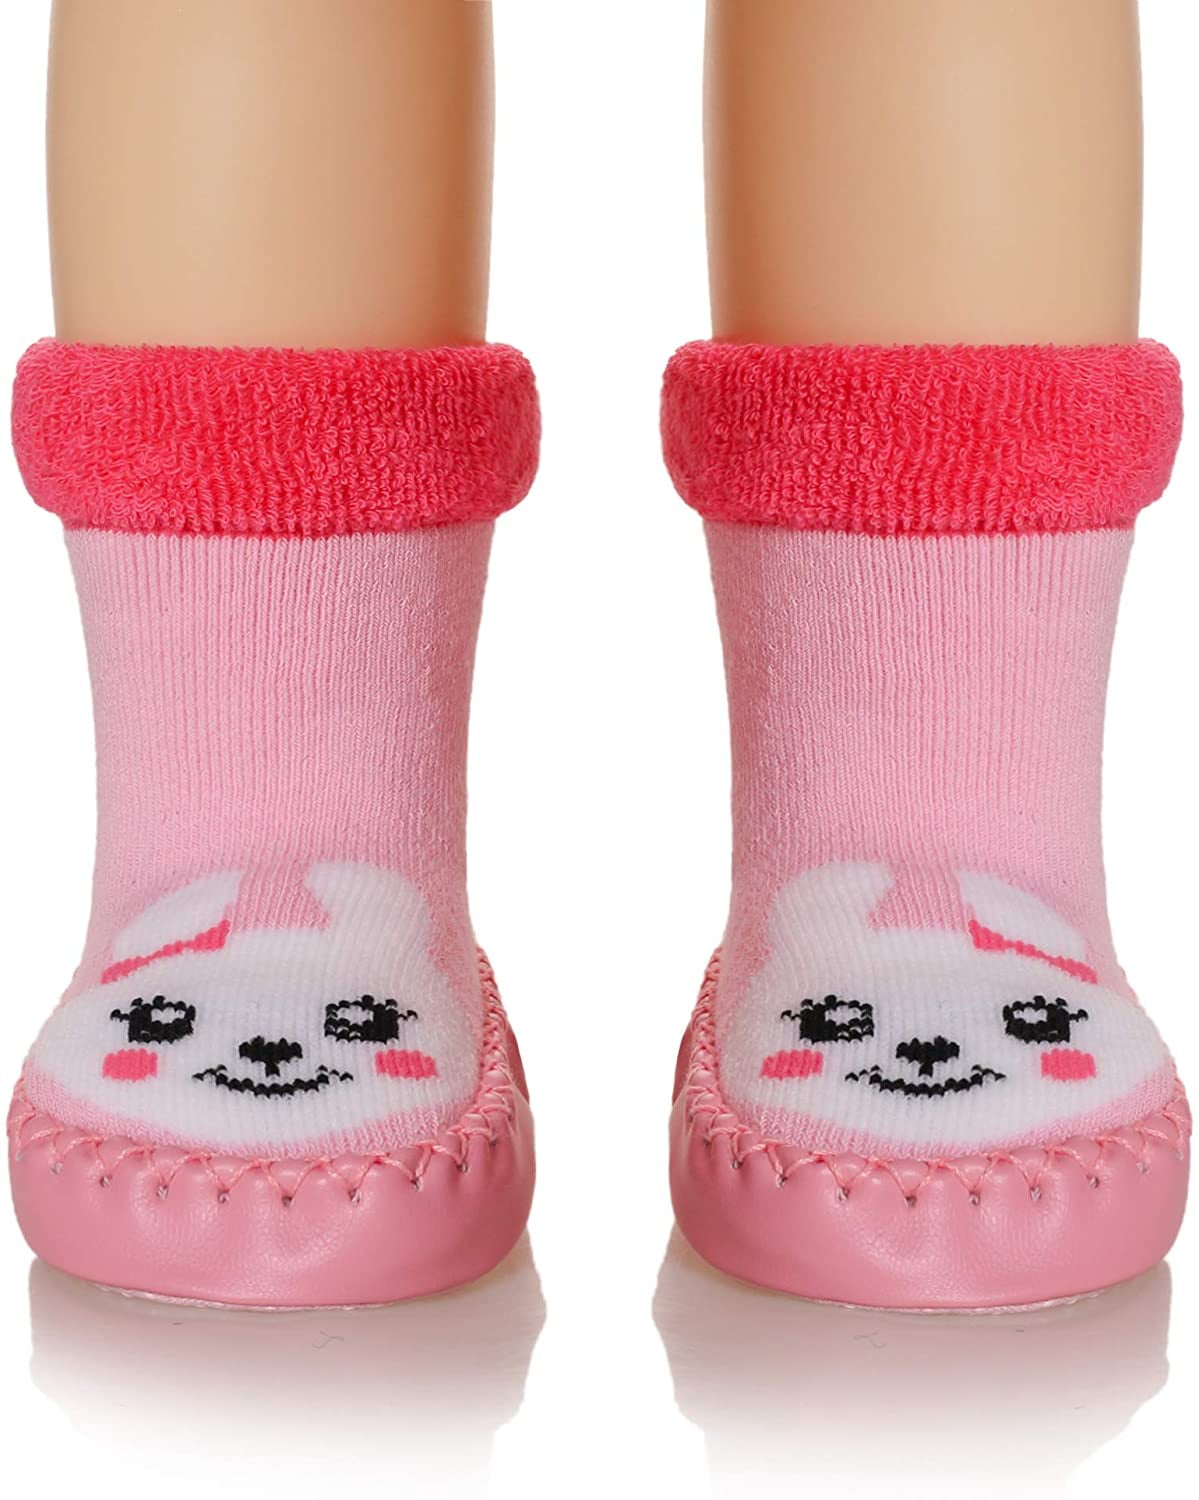 Kids Boy Girl Animal House Slipper Soft Warm Winter Plush Non-Skid Indoor Slipper Shoes Boot Socks 